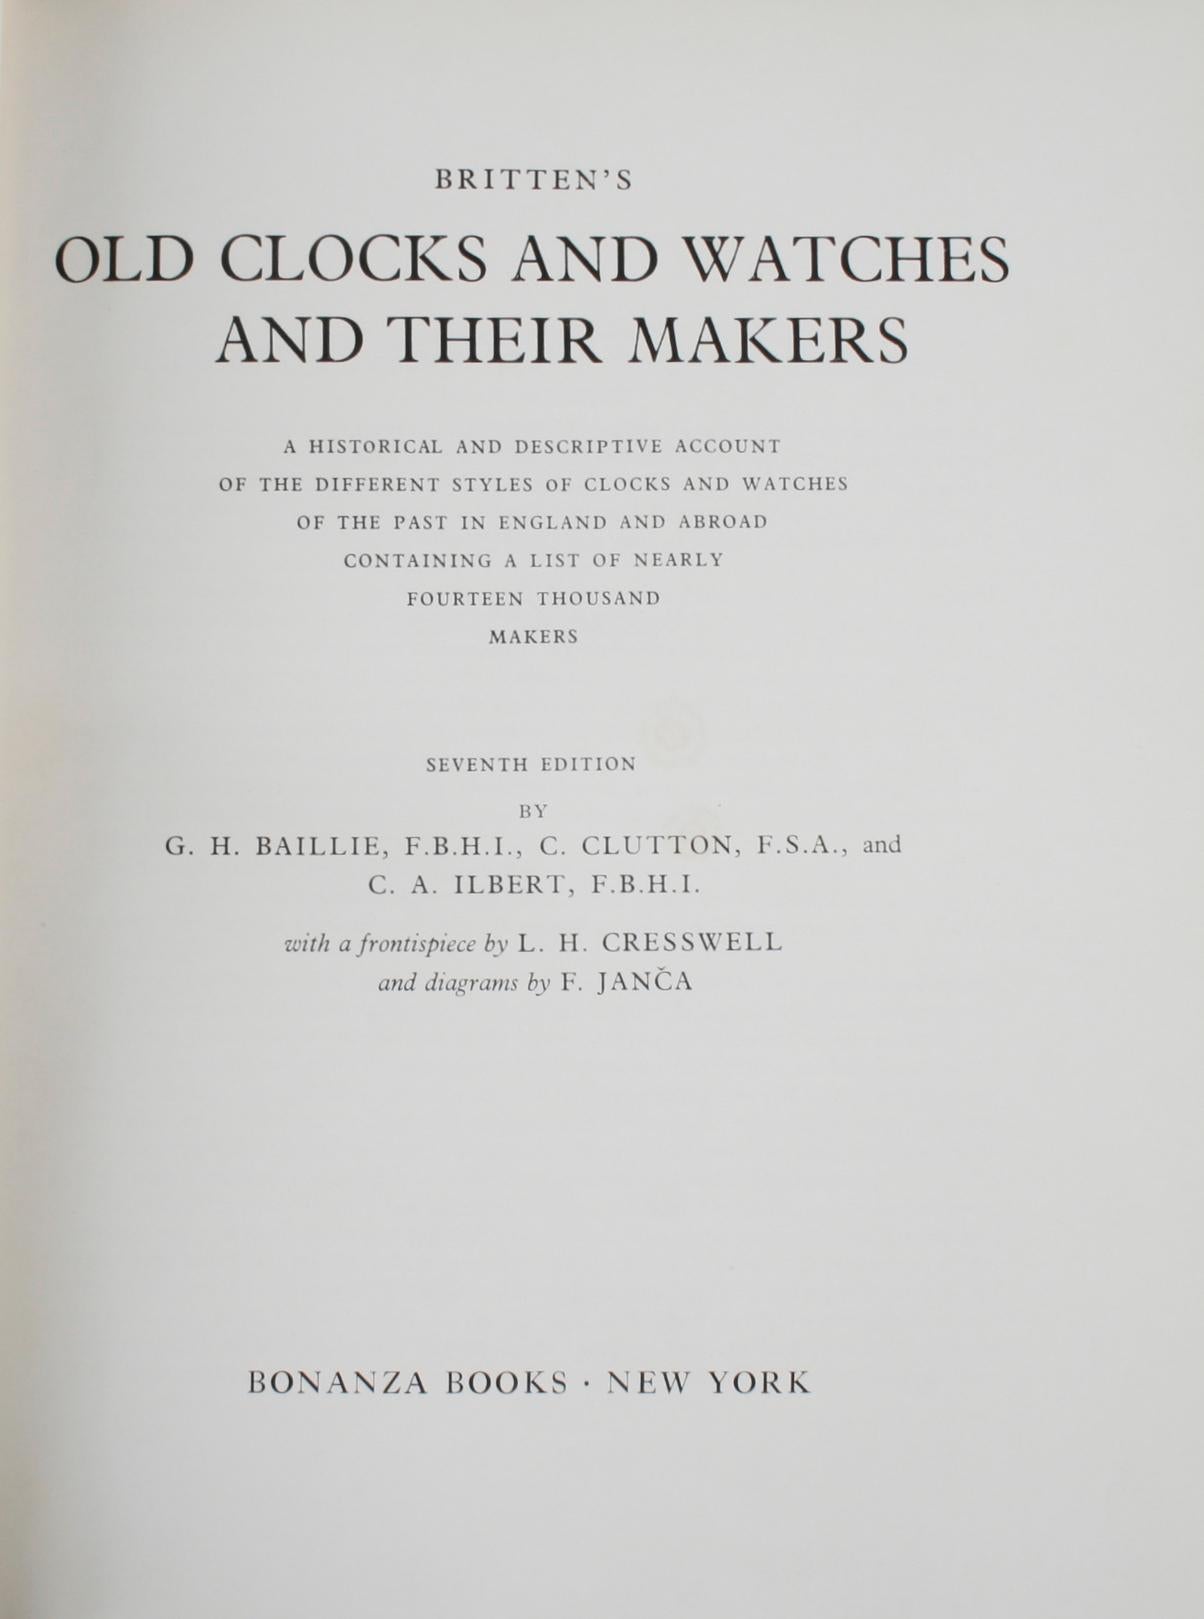 Britten's Old Clocks And Watches And Their Makers par Granville Hugh Baillie. Bonanza Books, New York, 1956. 7ème édition, couverture rigide avec jaquette. Un compte rendu historique et descriptif des différents styles d'horloges et de montres